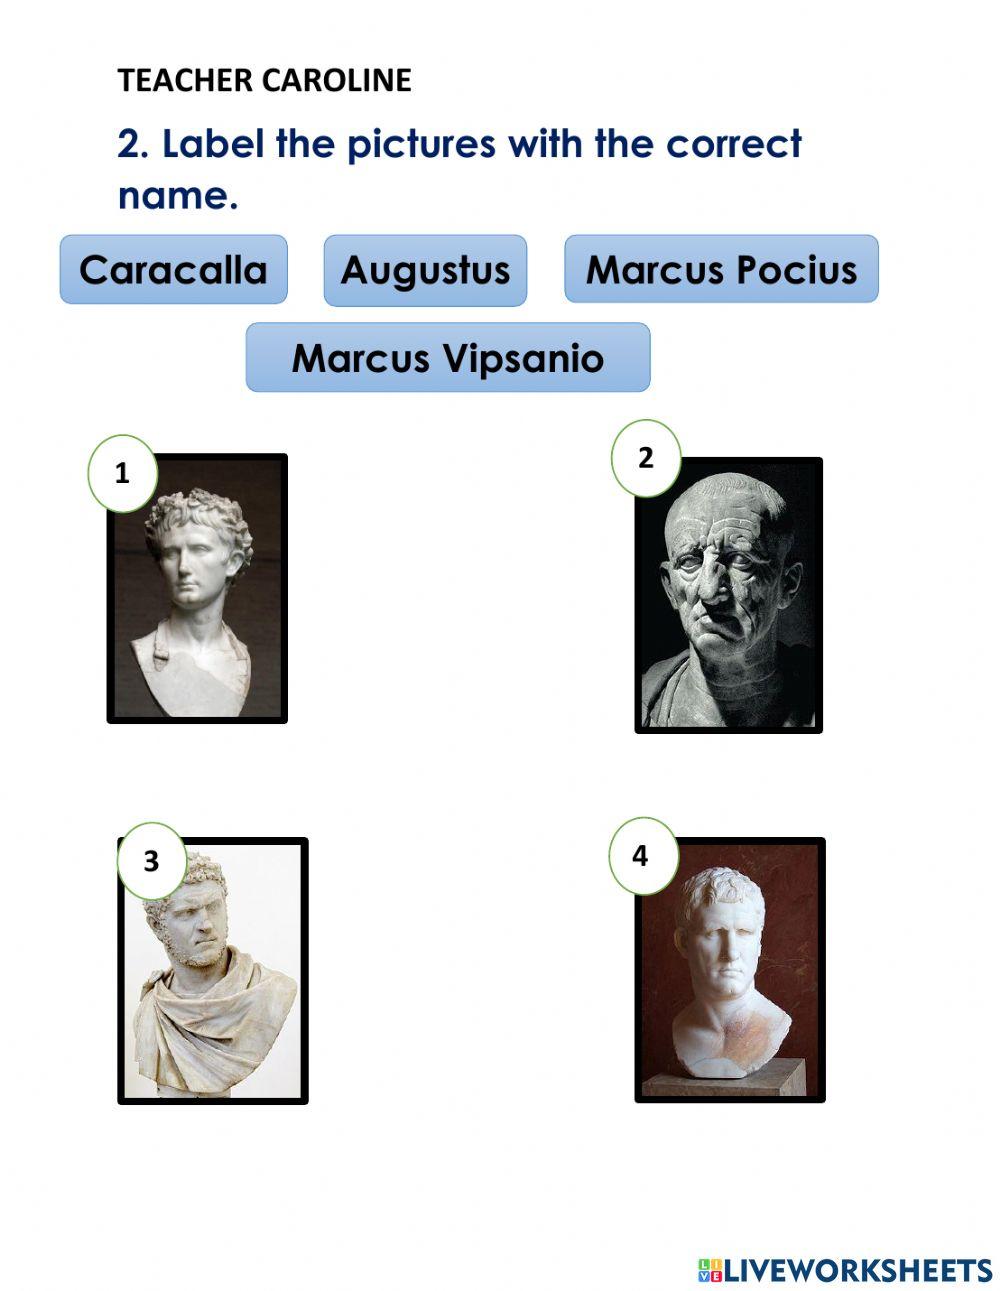 Roman authorities